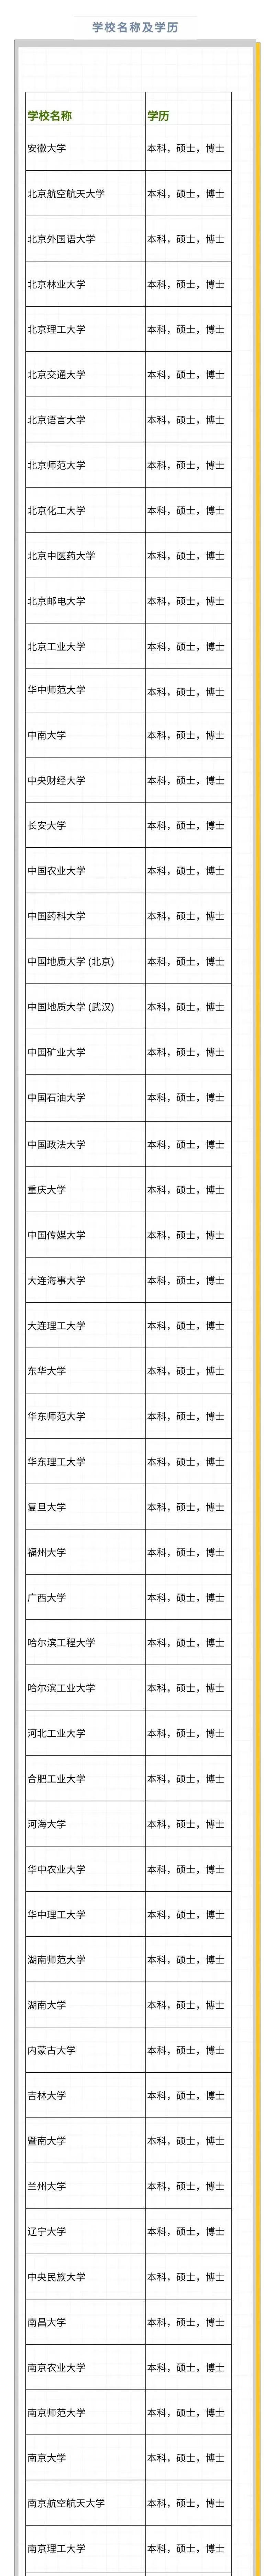 【名单】新西兰豁免认证的中国学历院校名单